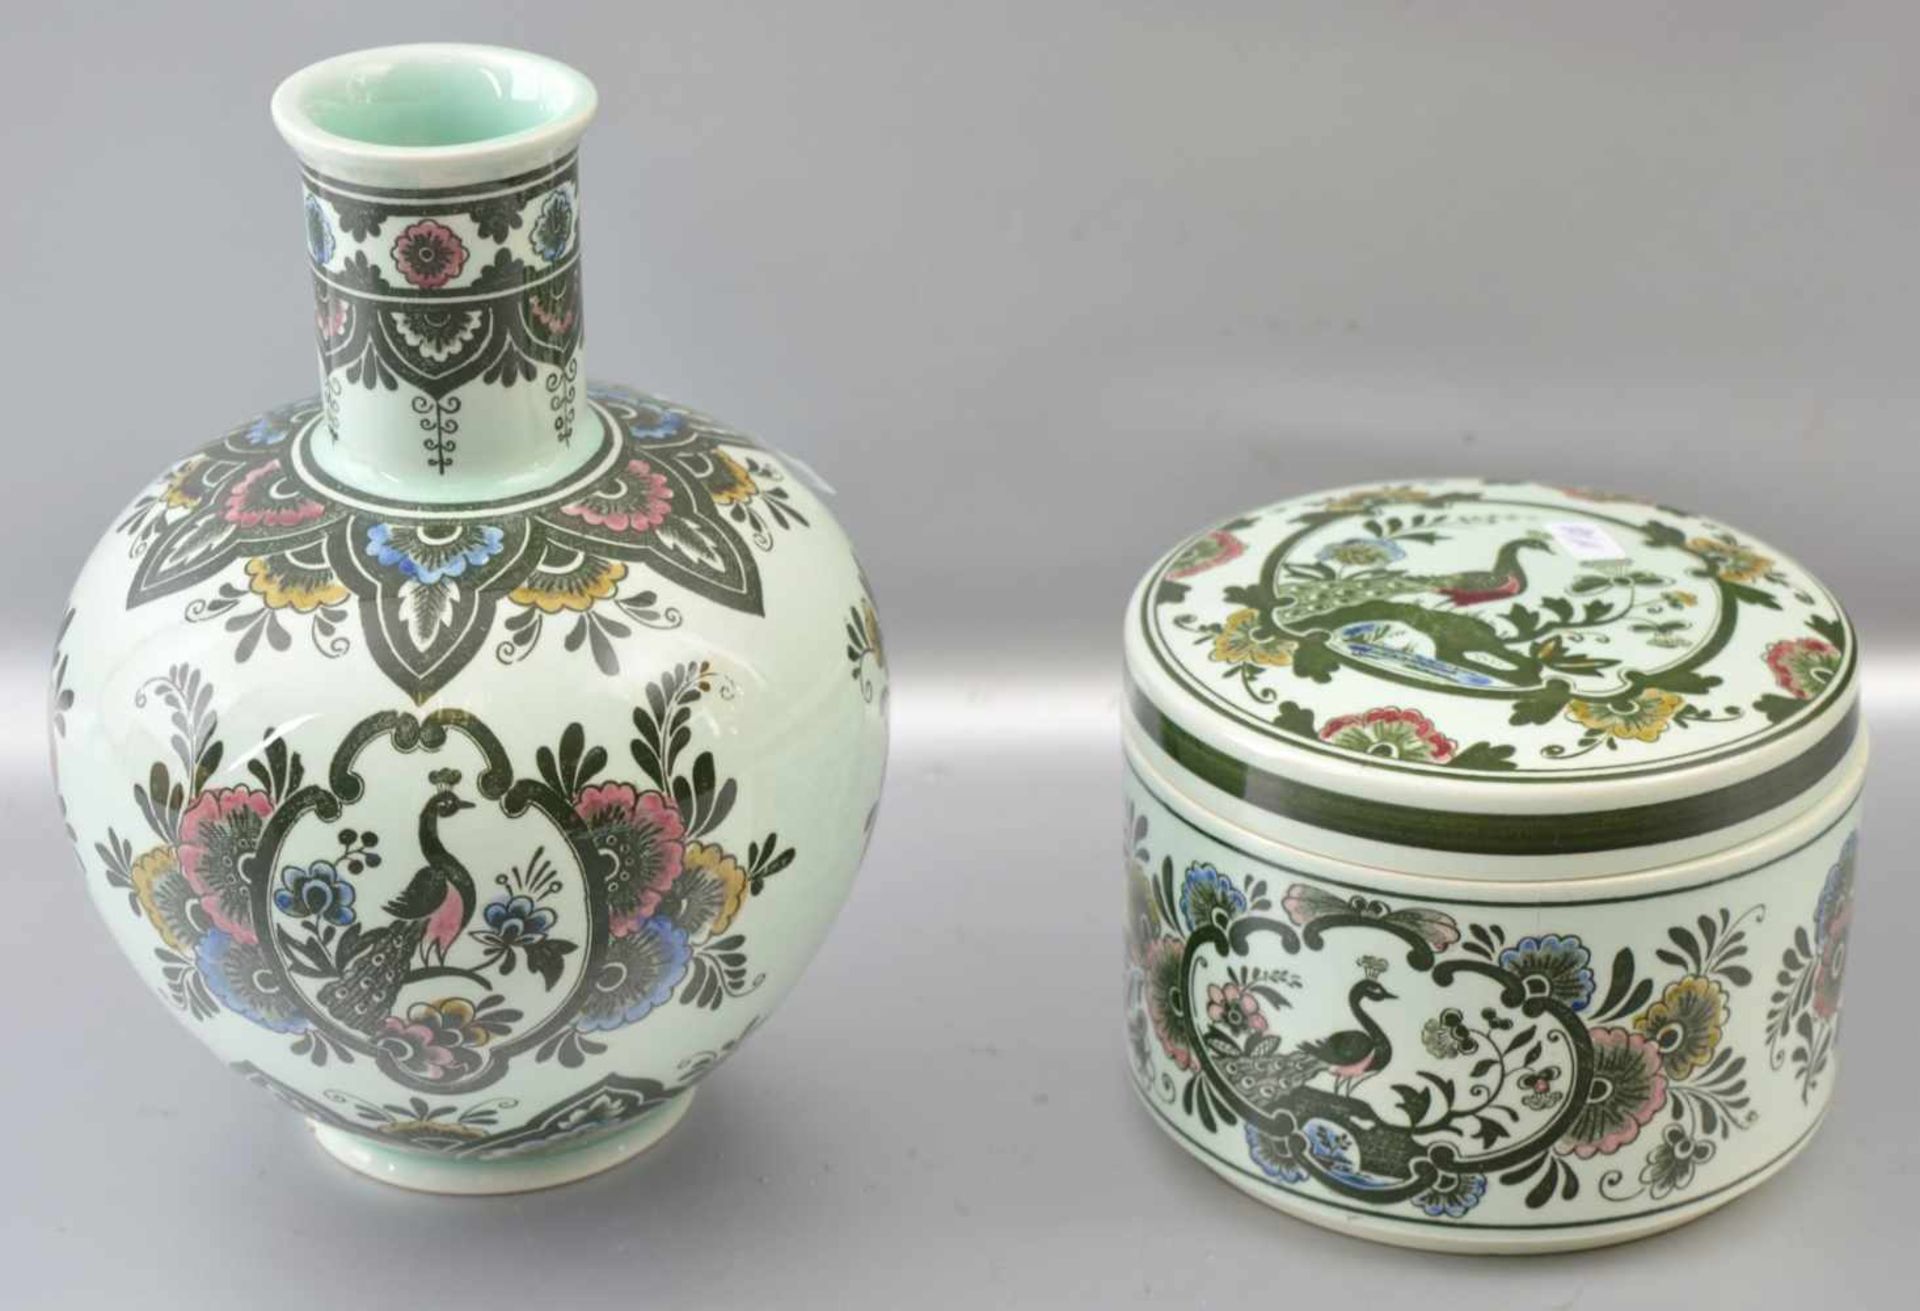 Vase und Deckeldose beige, Vase gebaucht, Wandung und Deckel mit bunten Blumen- und Tiermotiven